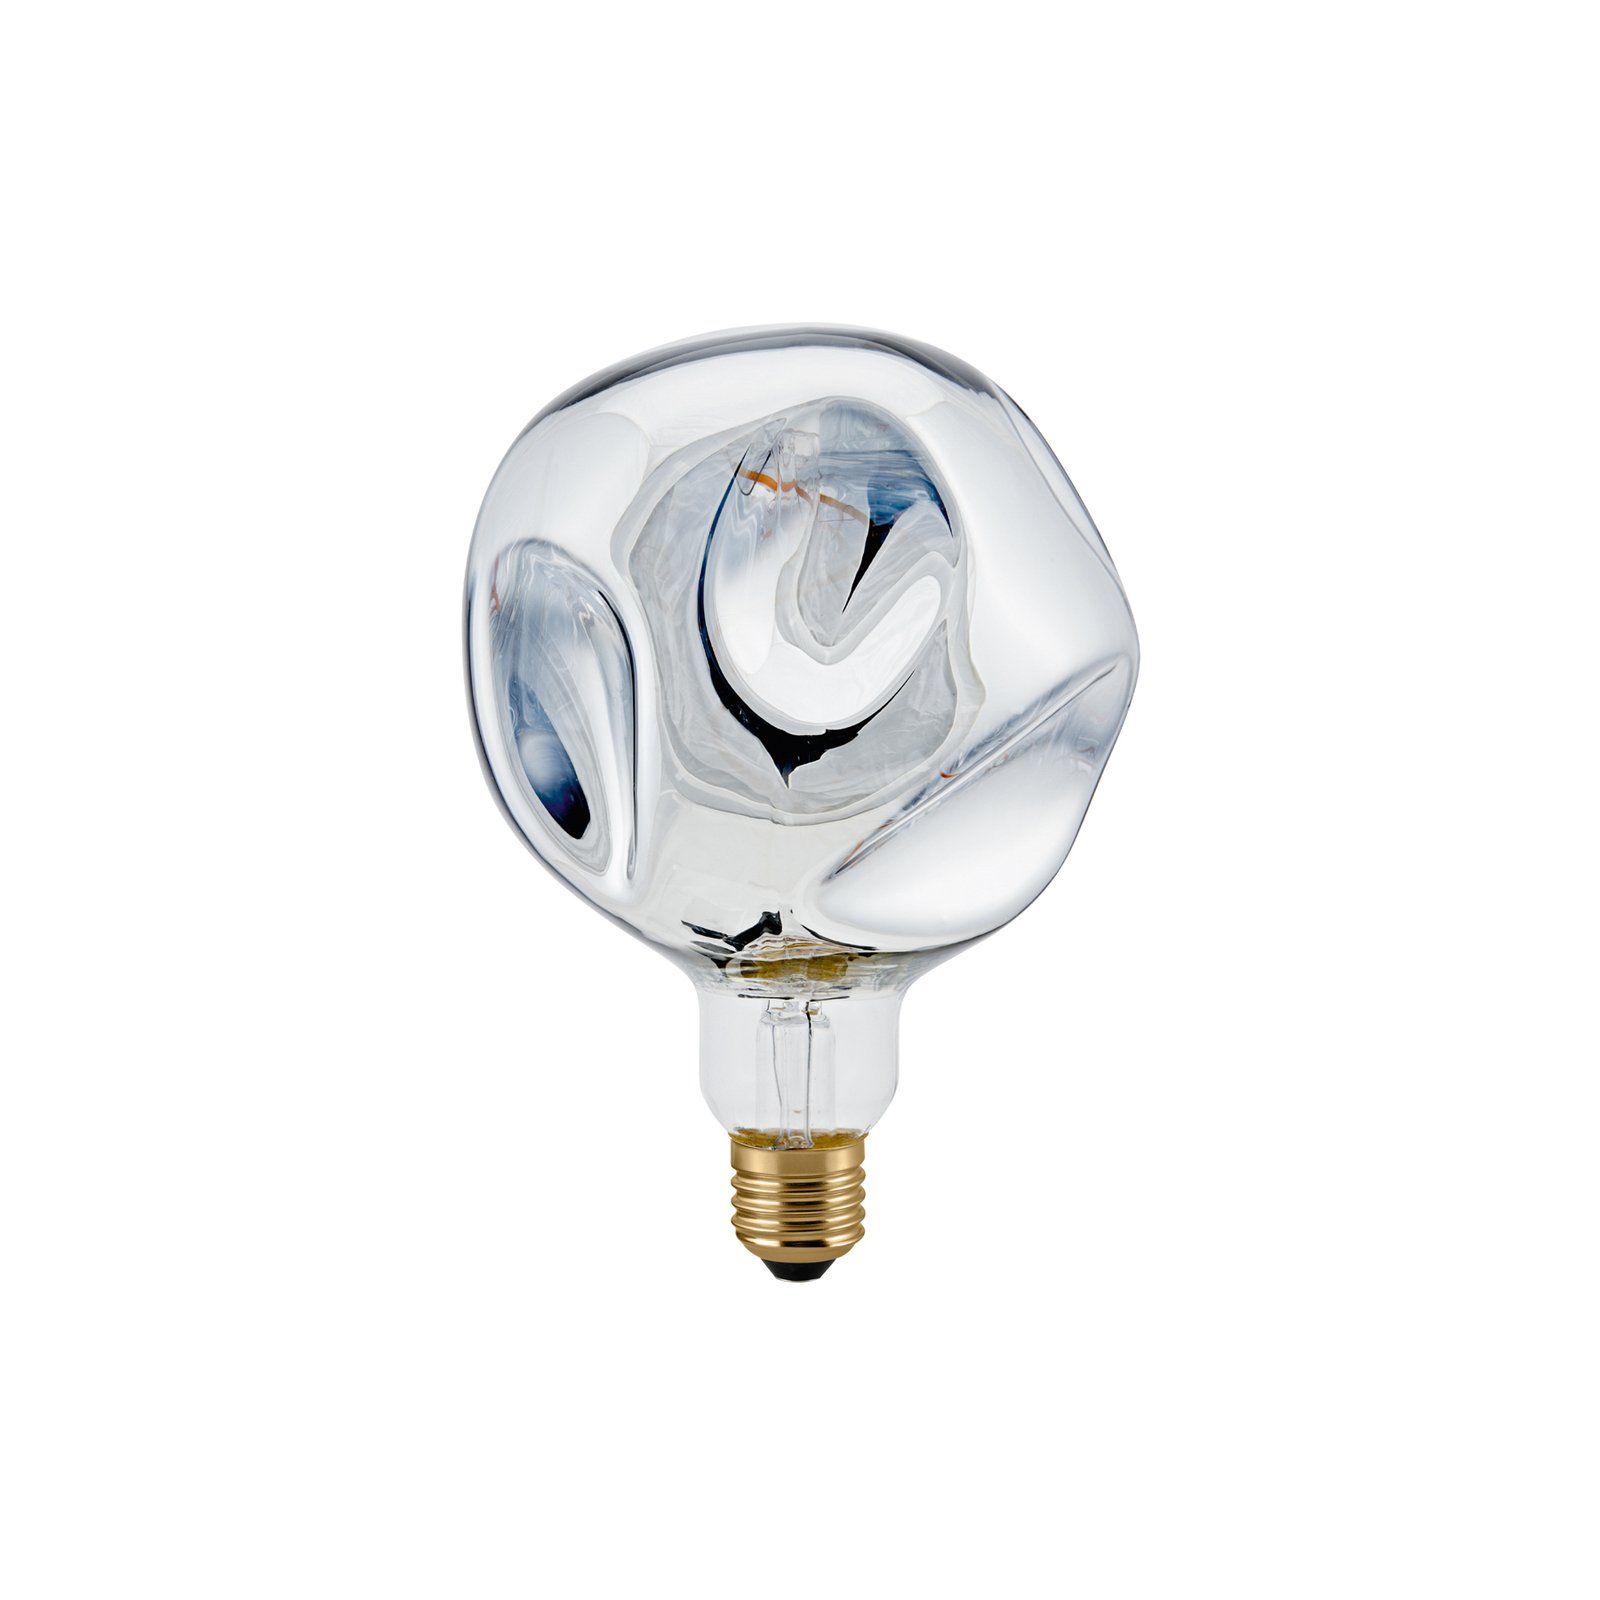 Żarówka LED Giant Ball E27 4W 918 ściemniana srebrno-metaliczna.